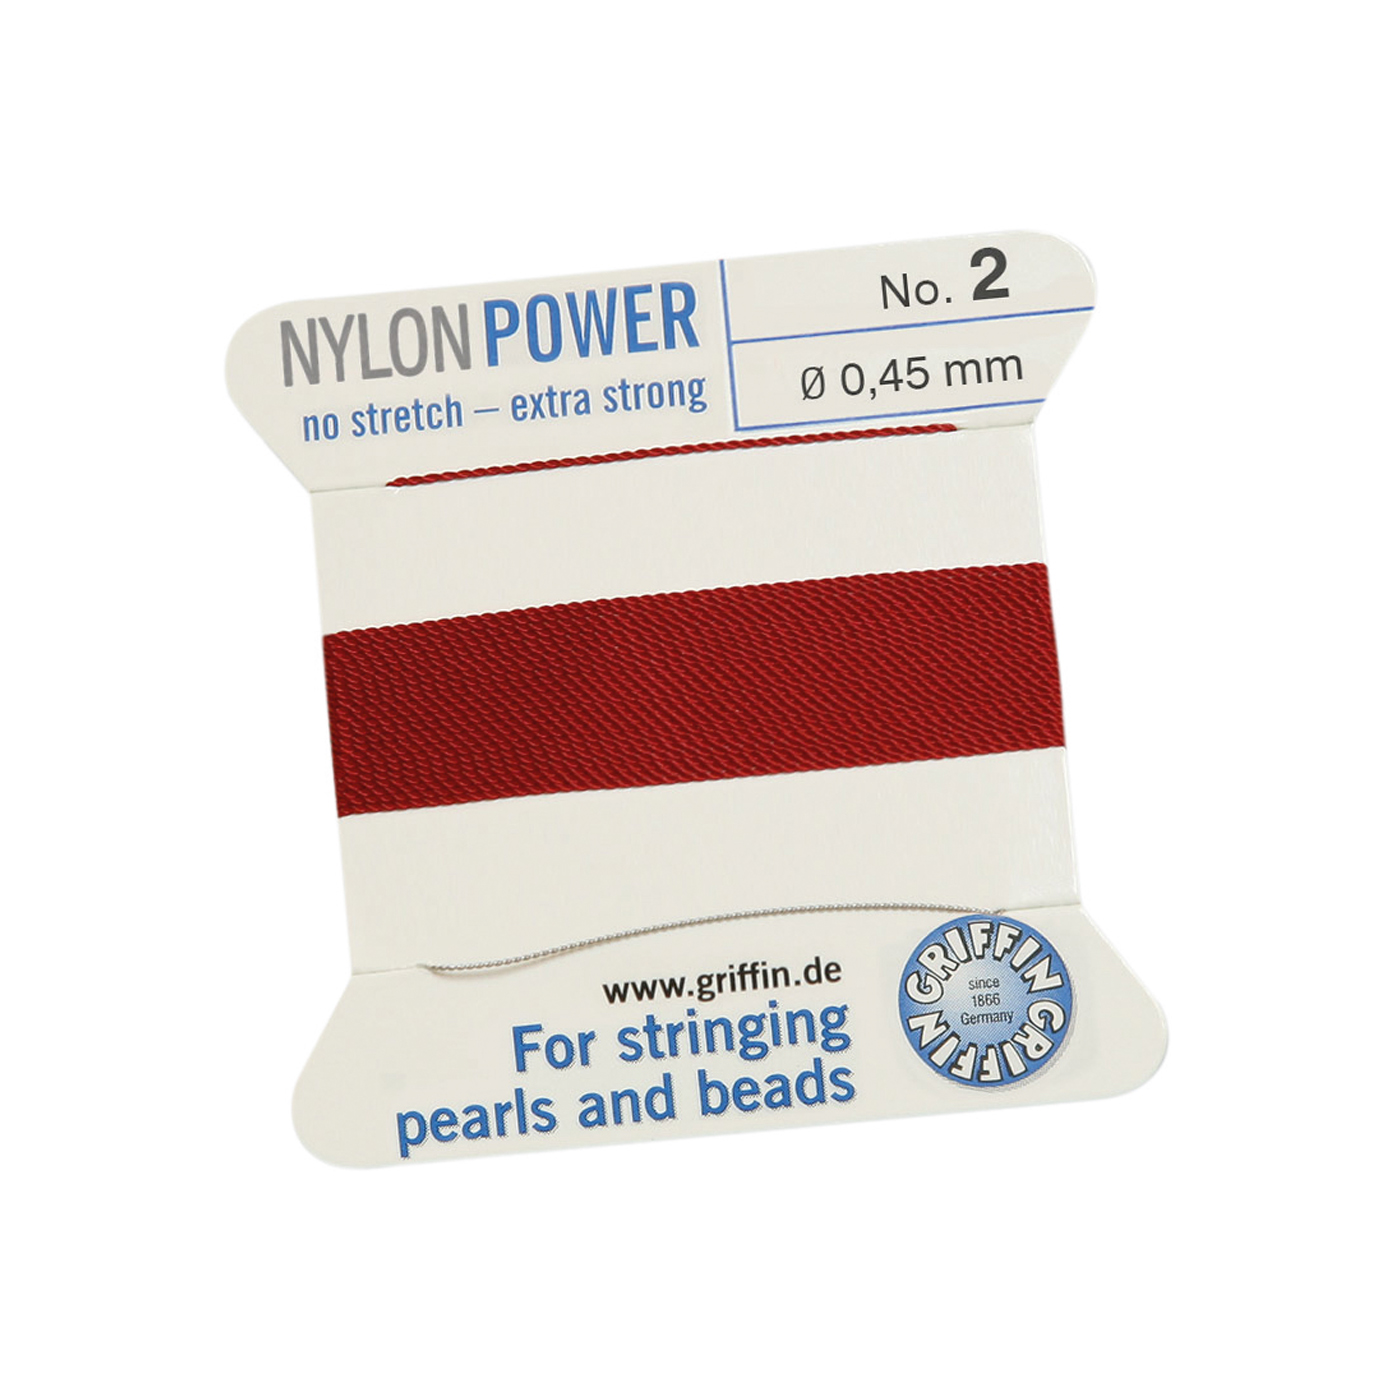 Bead Cord NylonPower, Garnet Red, No. 2 - 2 m